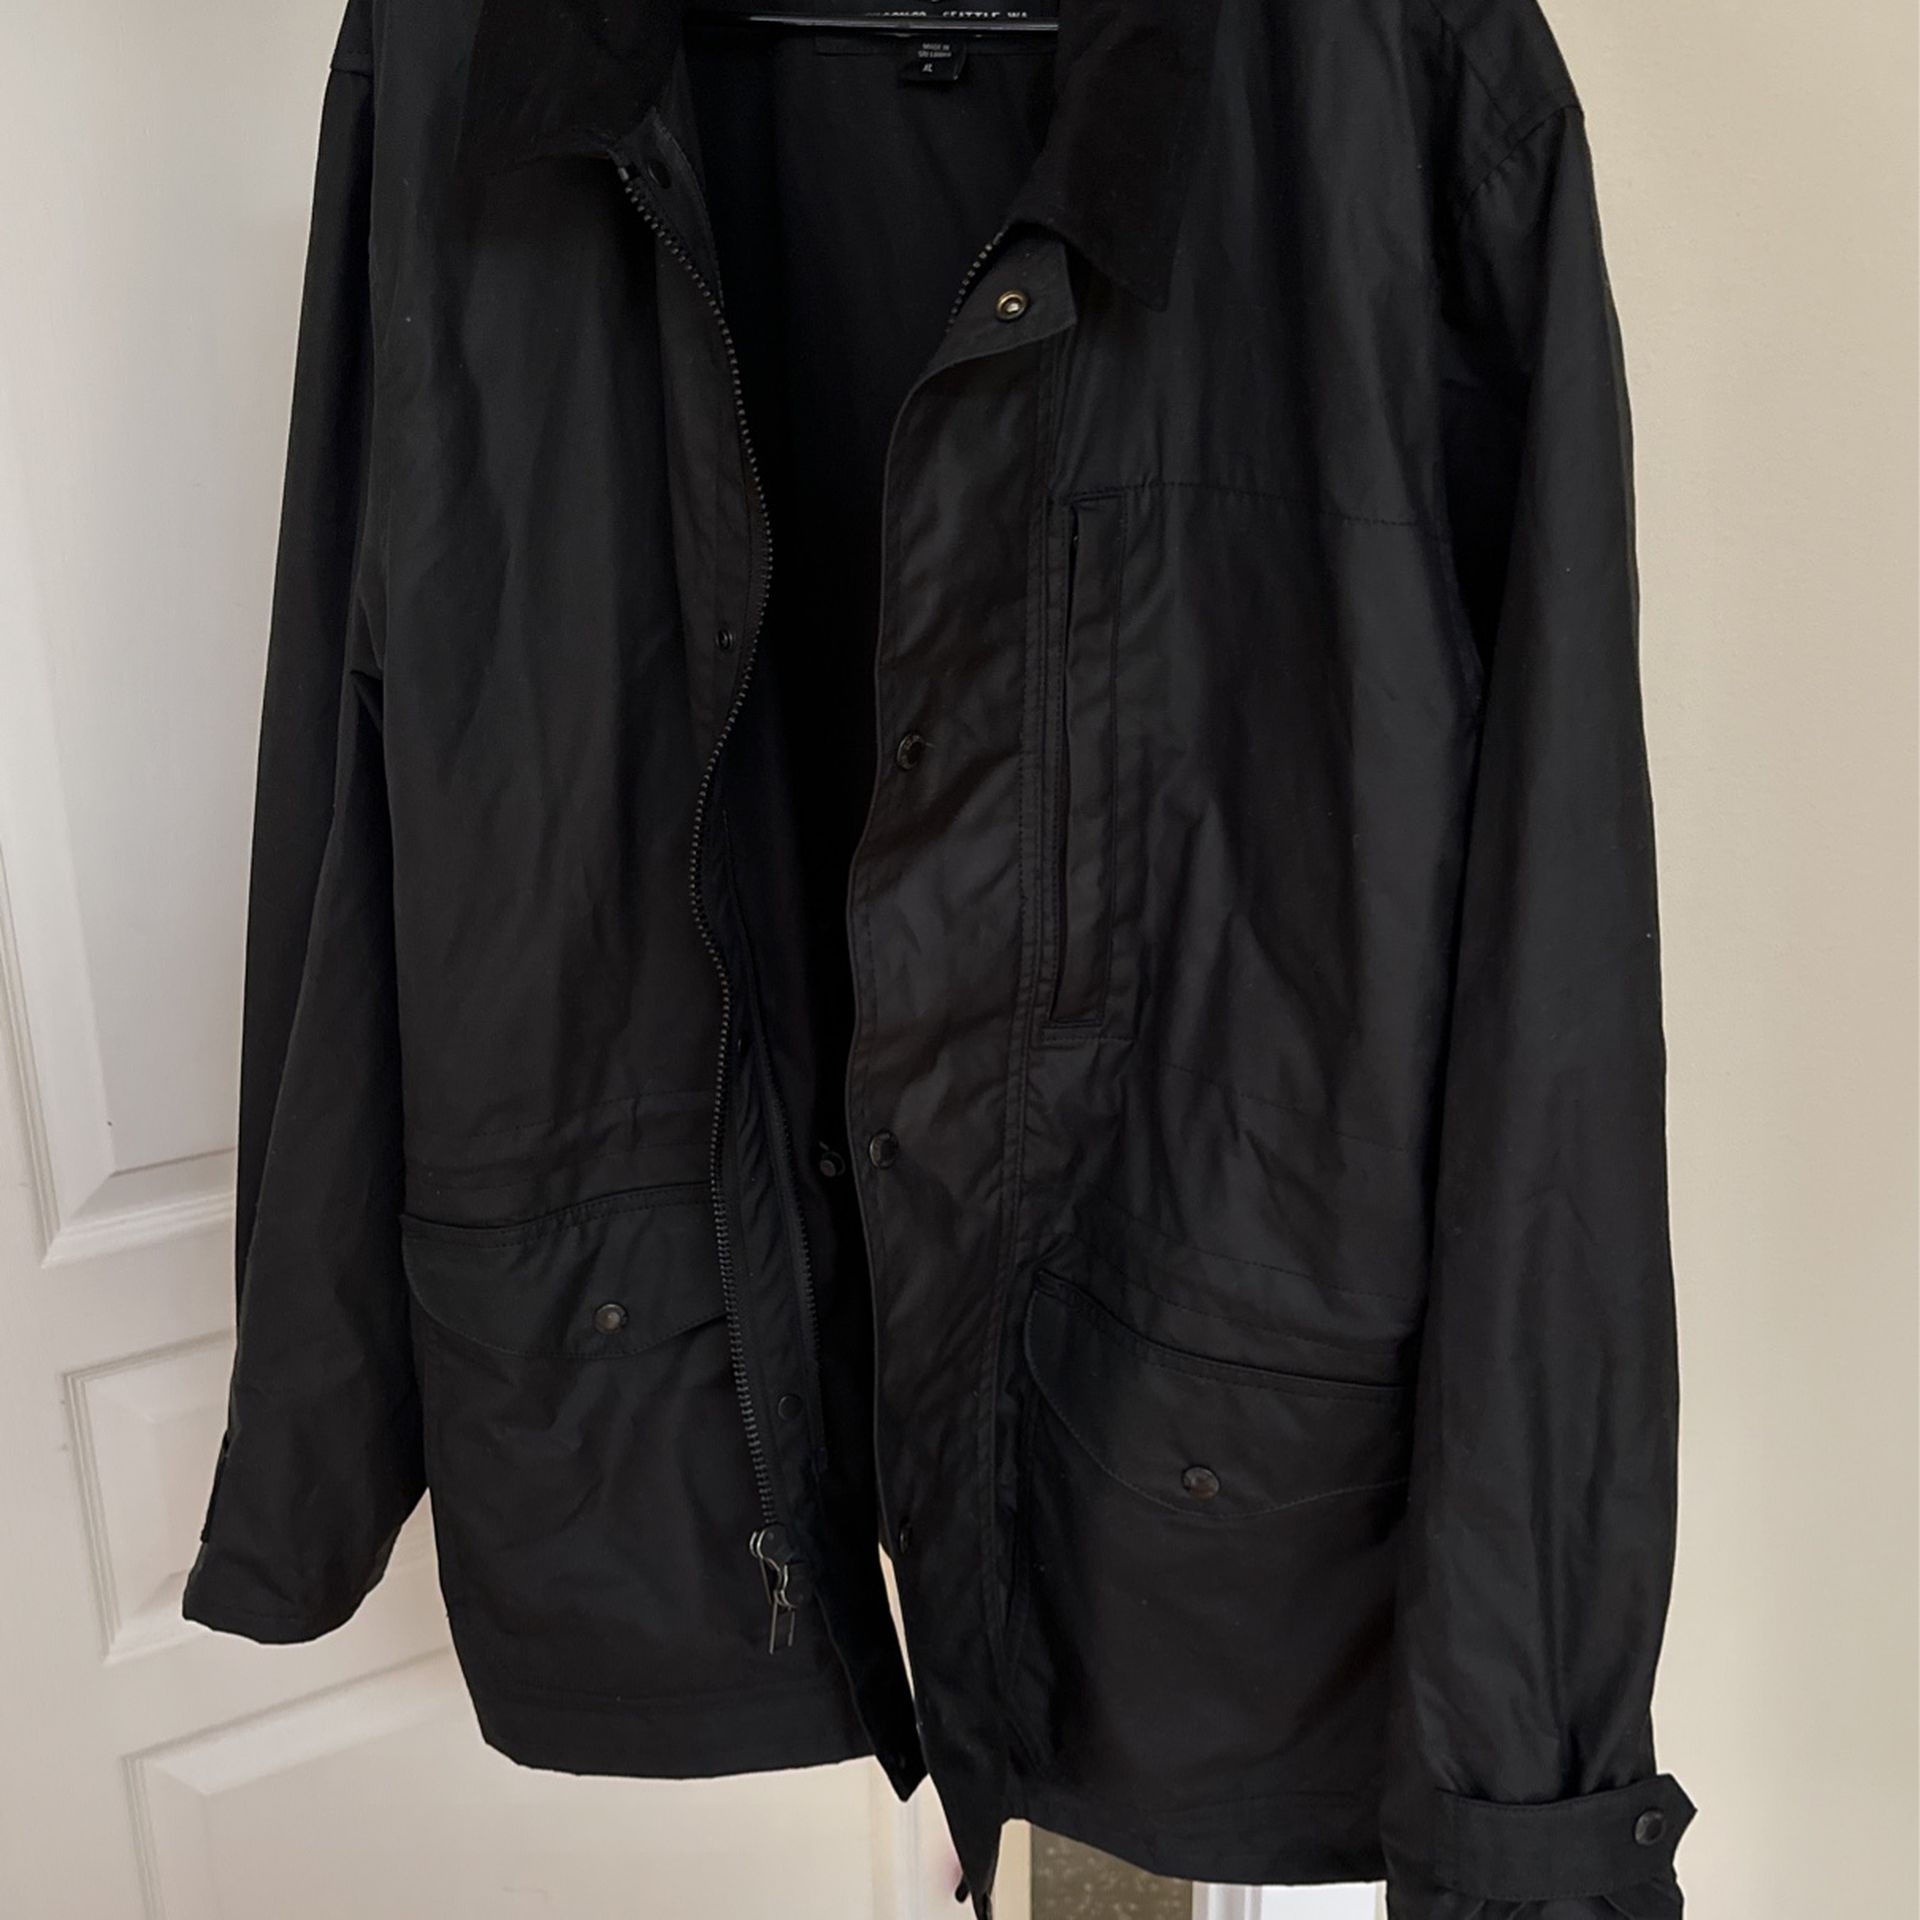 Filson Rain Jacket - XL for Sale in Fall City, WA - OfferUp